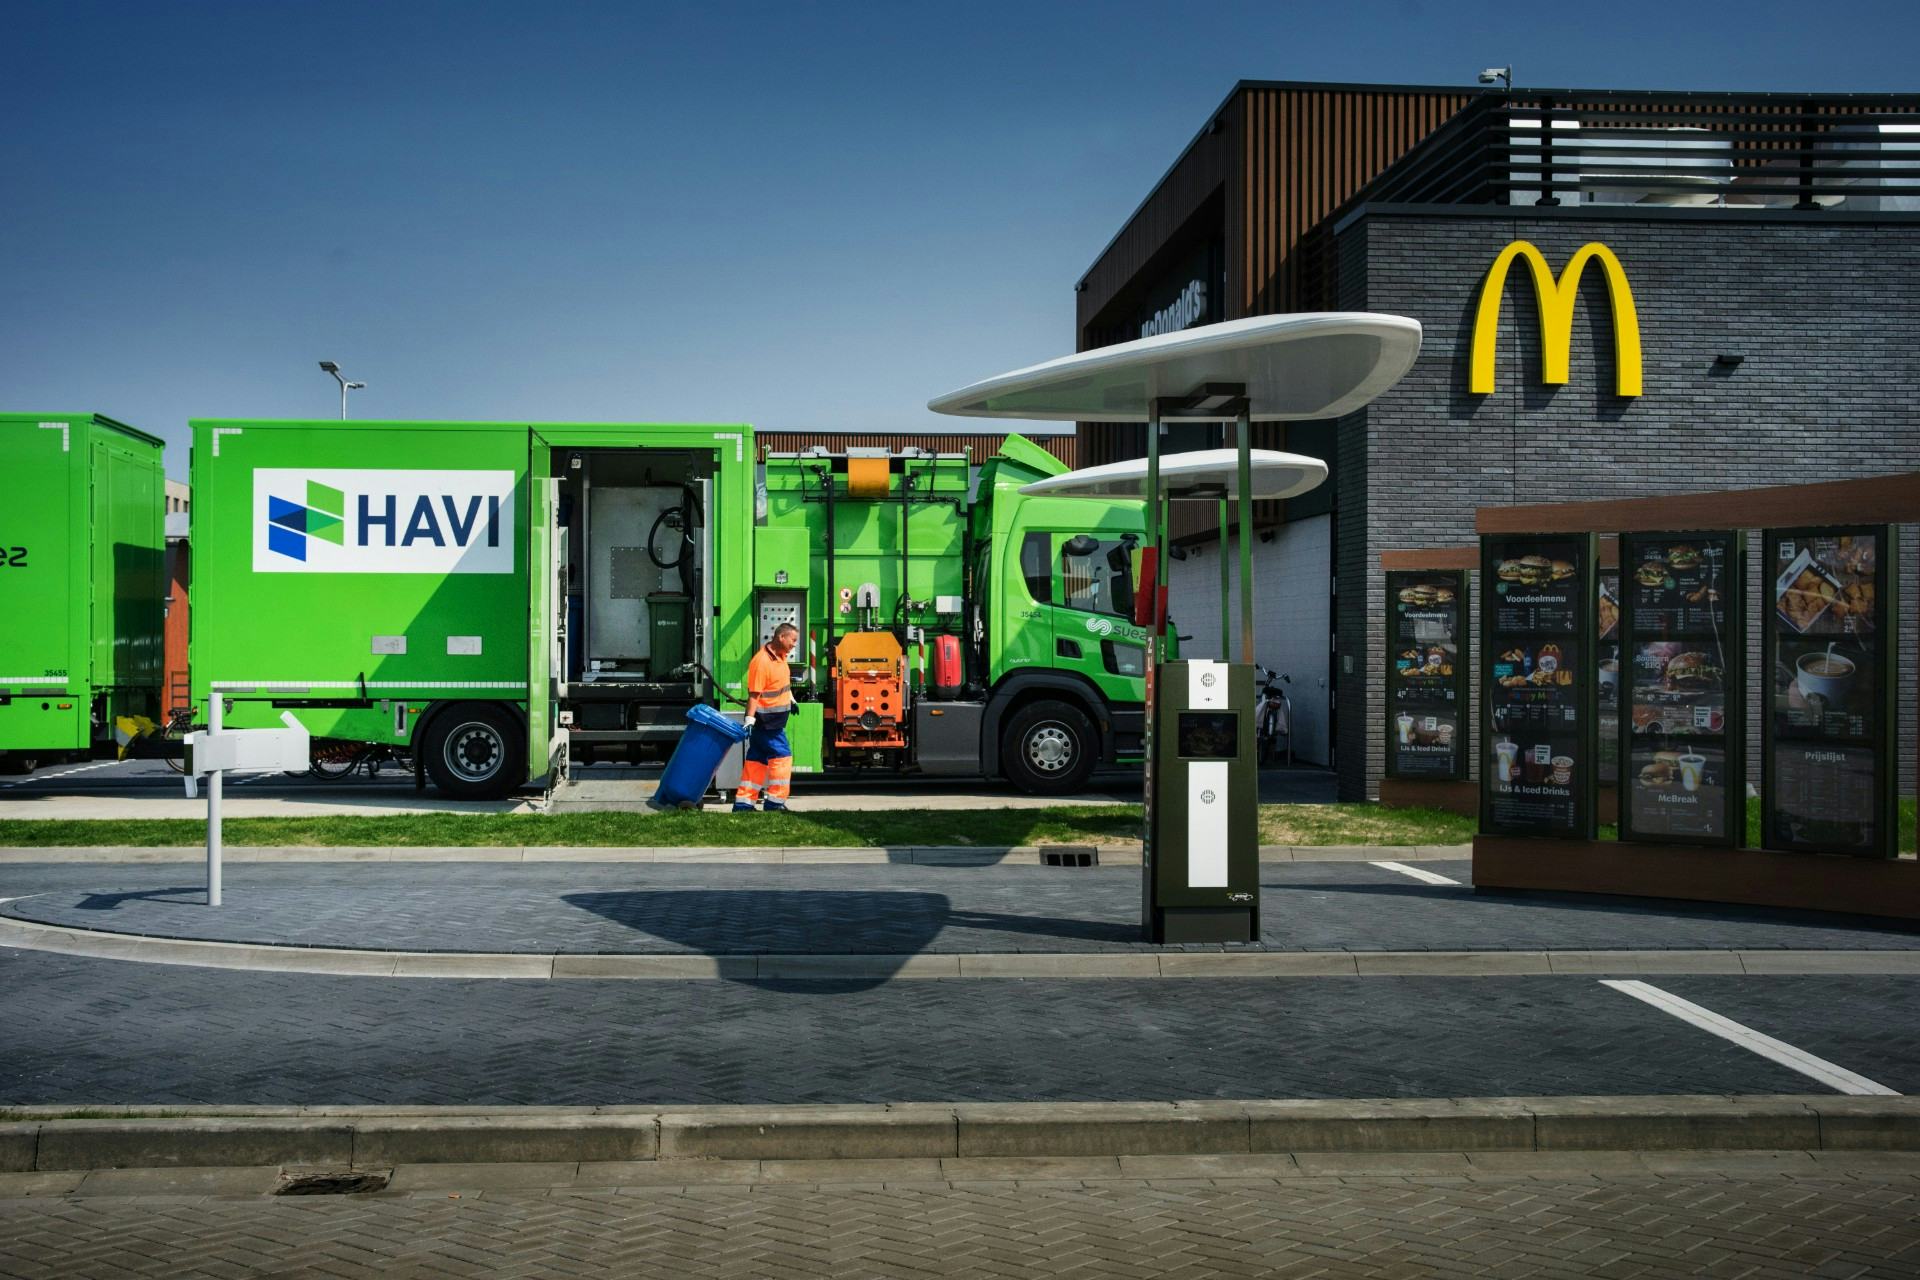 Vrachtwagens die leveren aan McDonald's gaan rijden op frituurvet van McDonald's